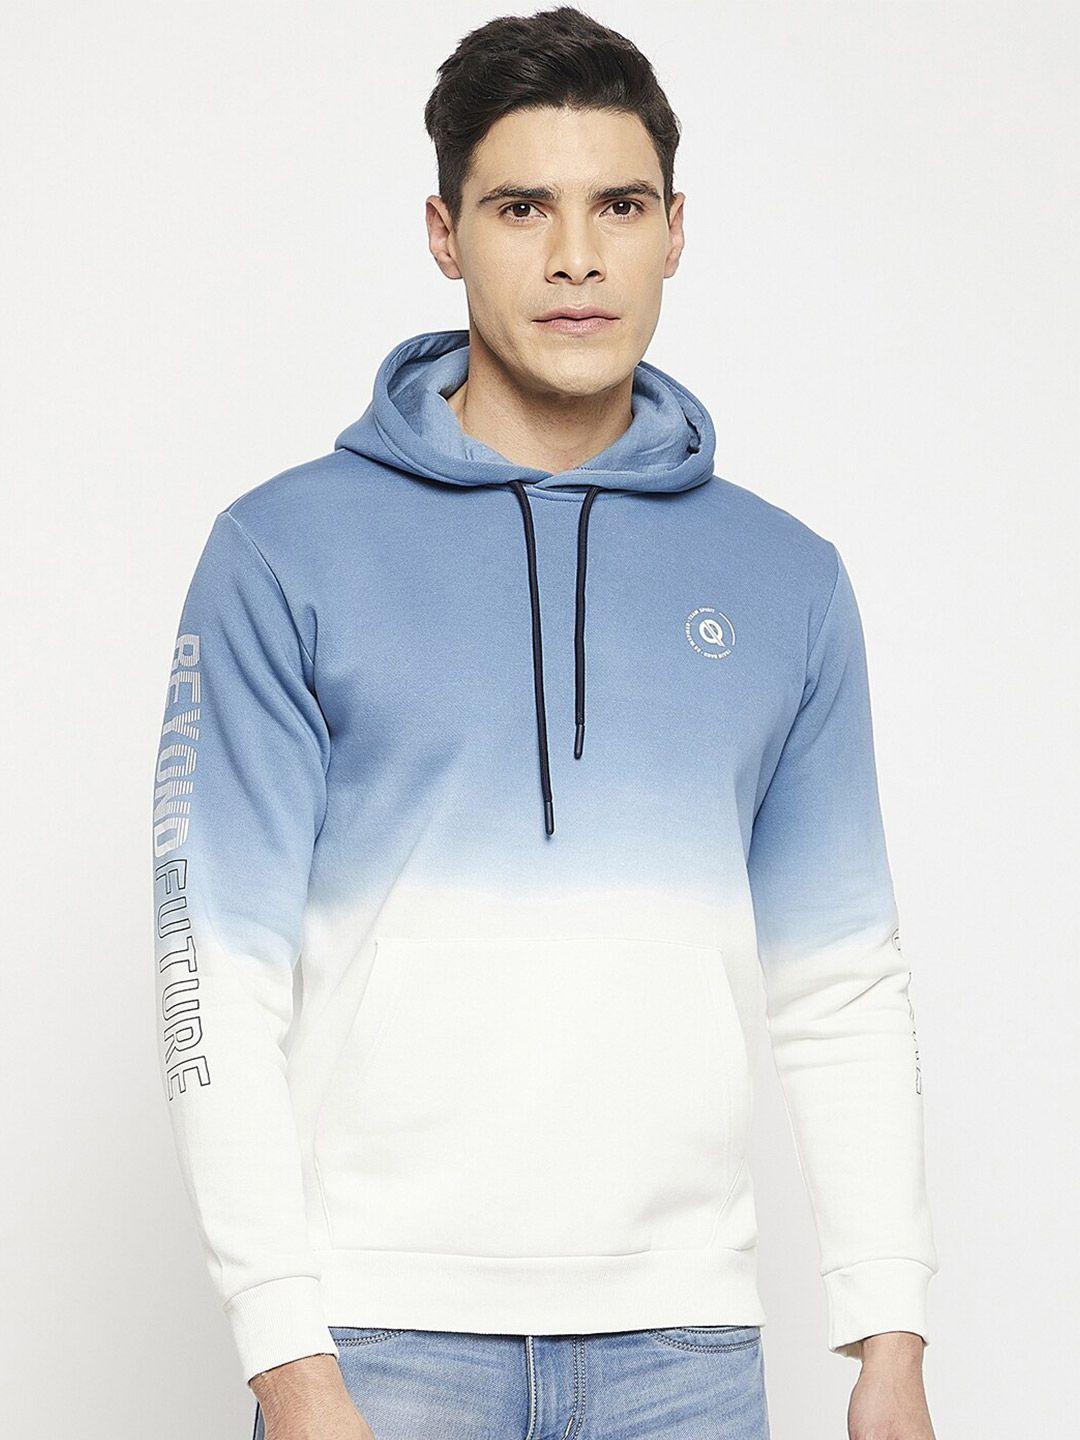 qubic-men-colourblocked-hooded-pullover-sweatshirt